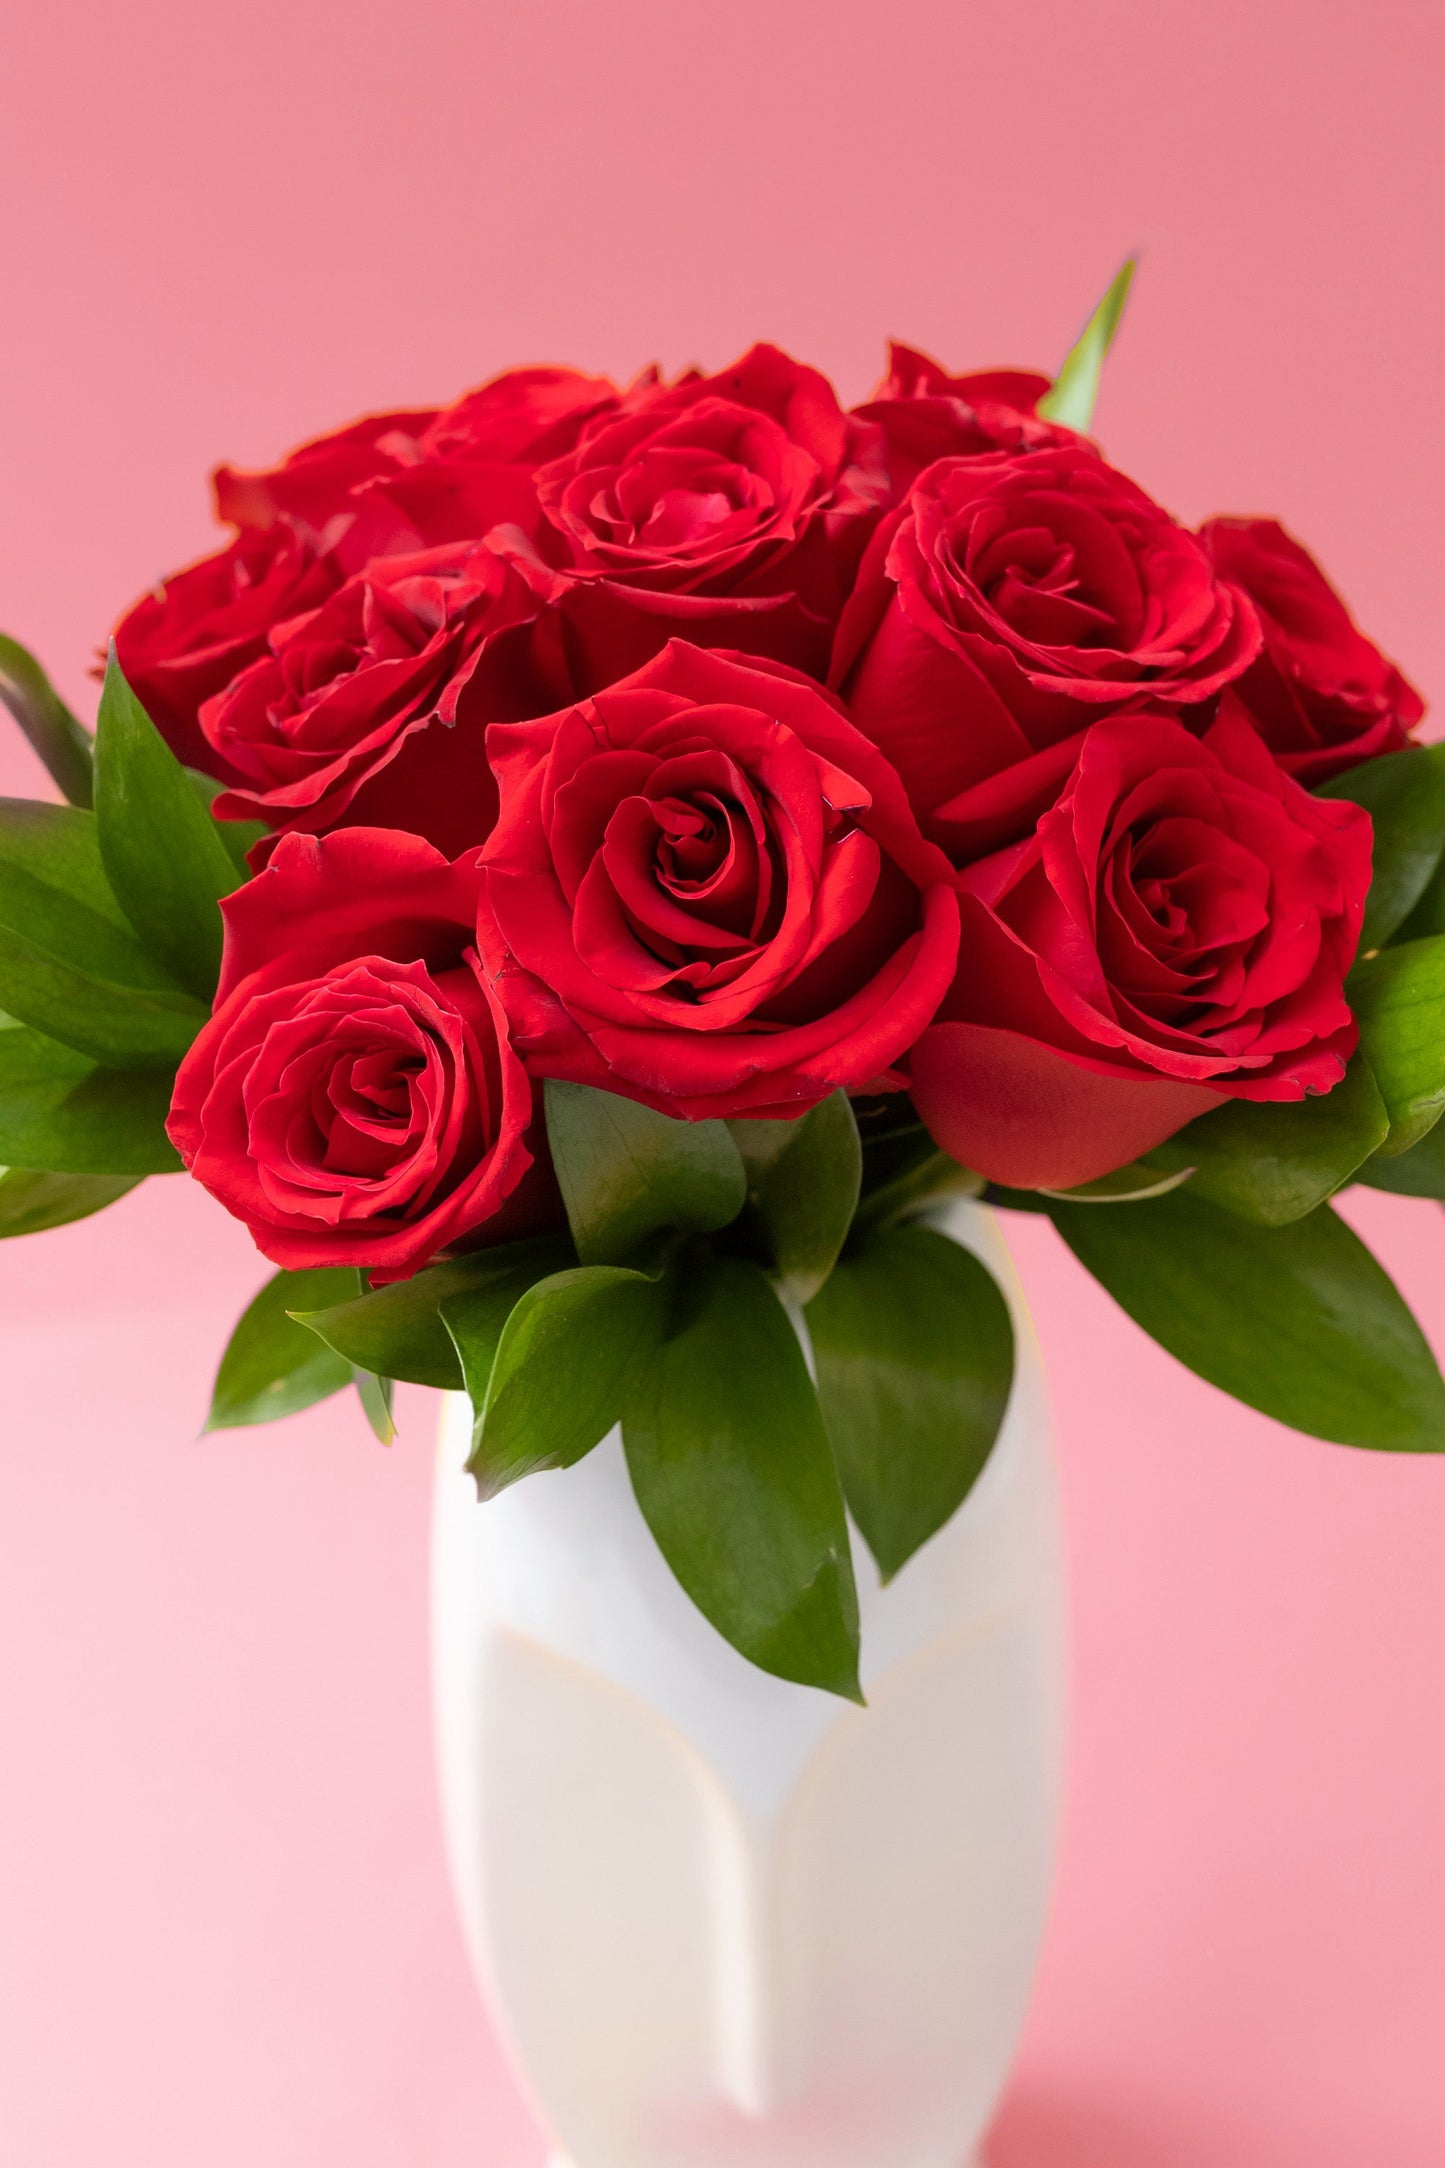 12 Rosas Rojas con Florero de Rostro MOM - Flores